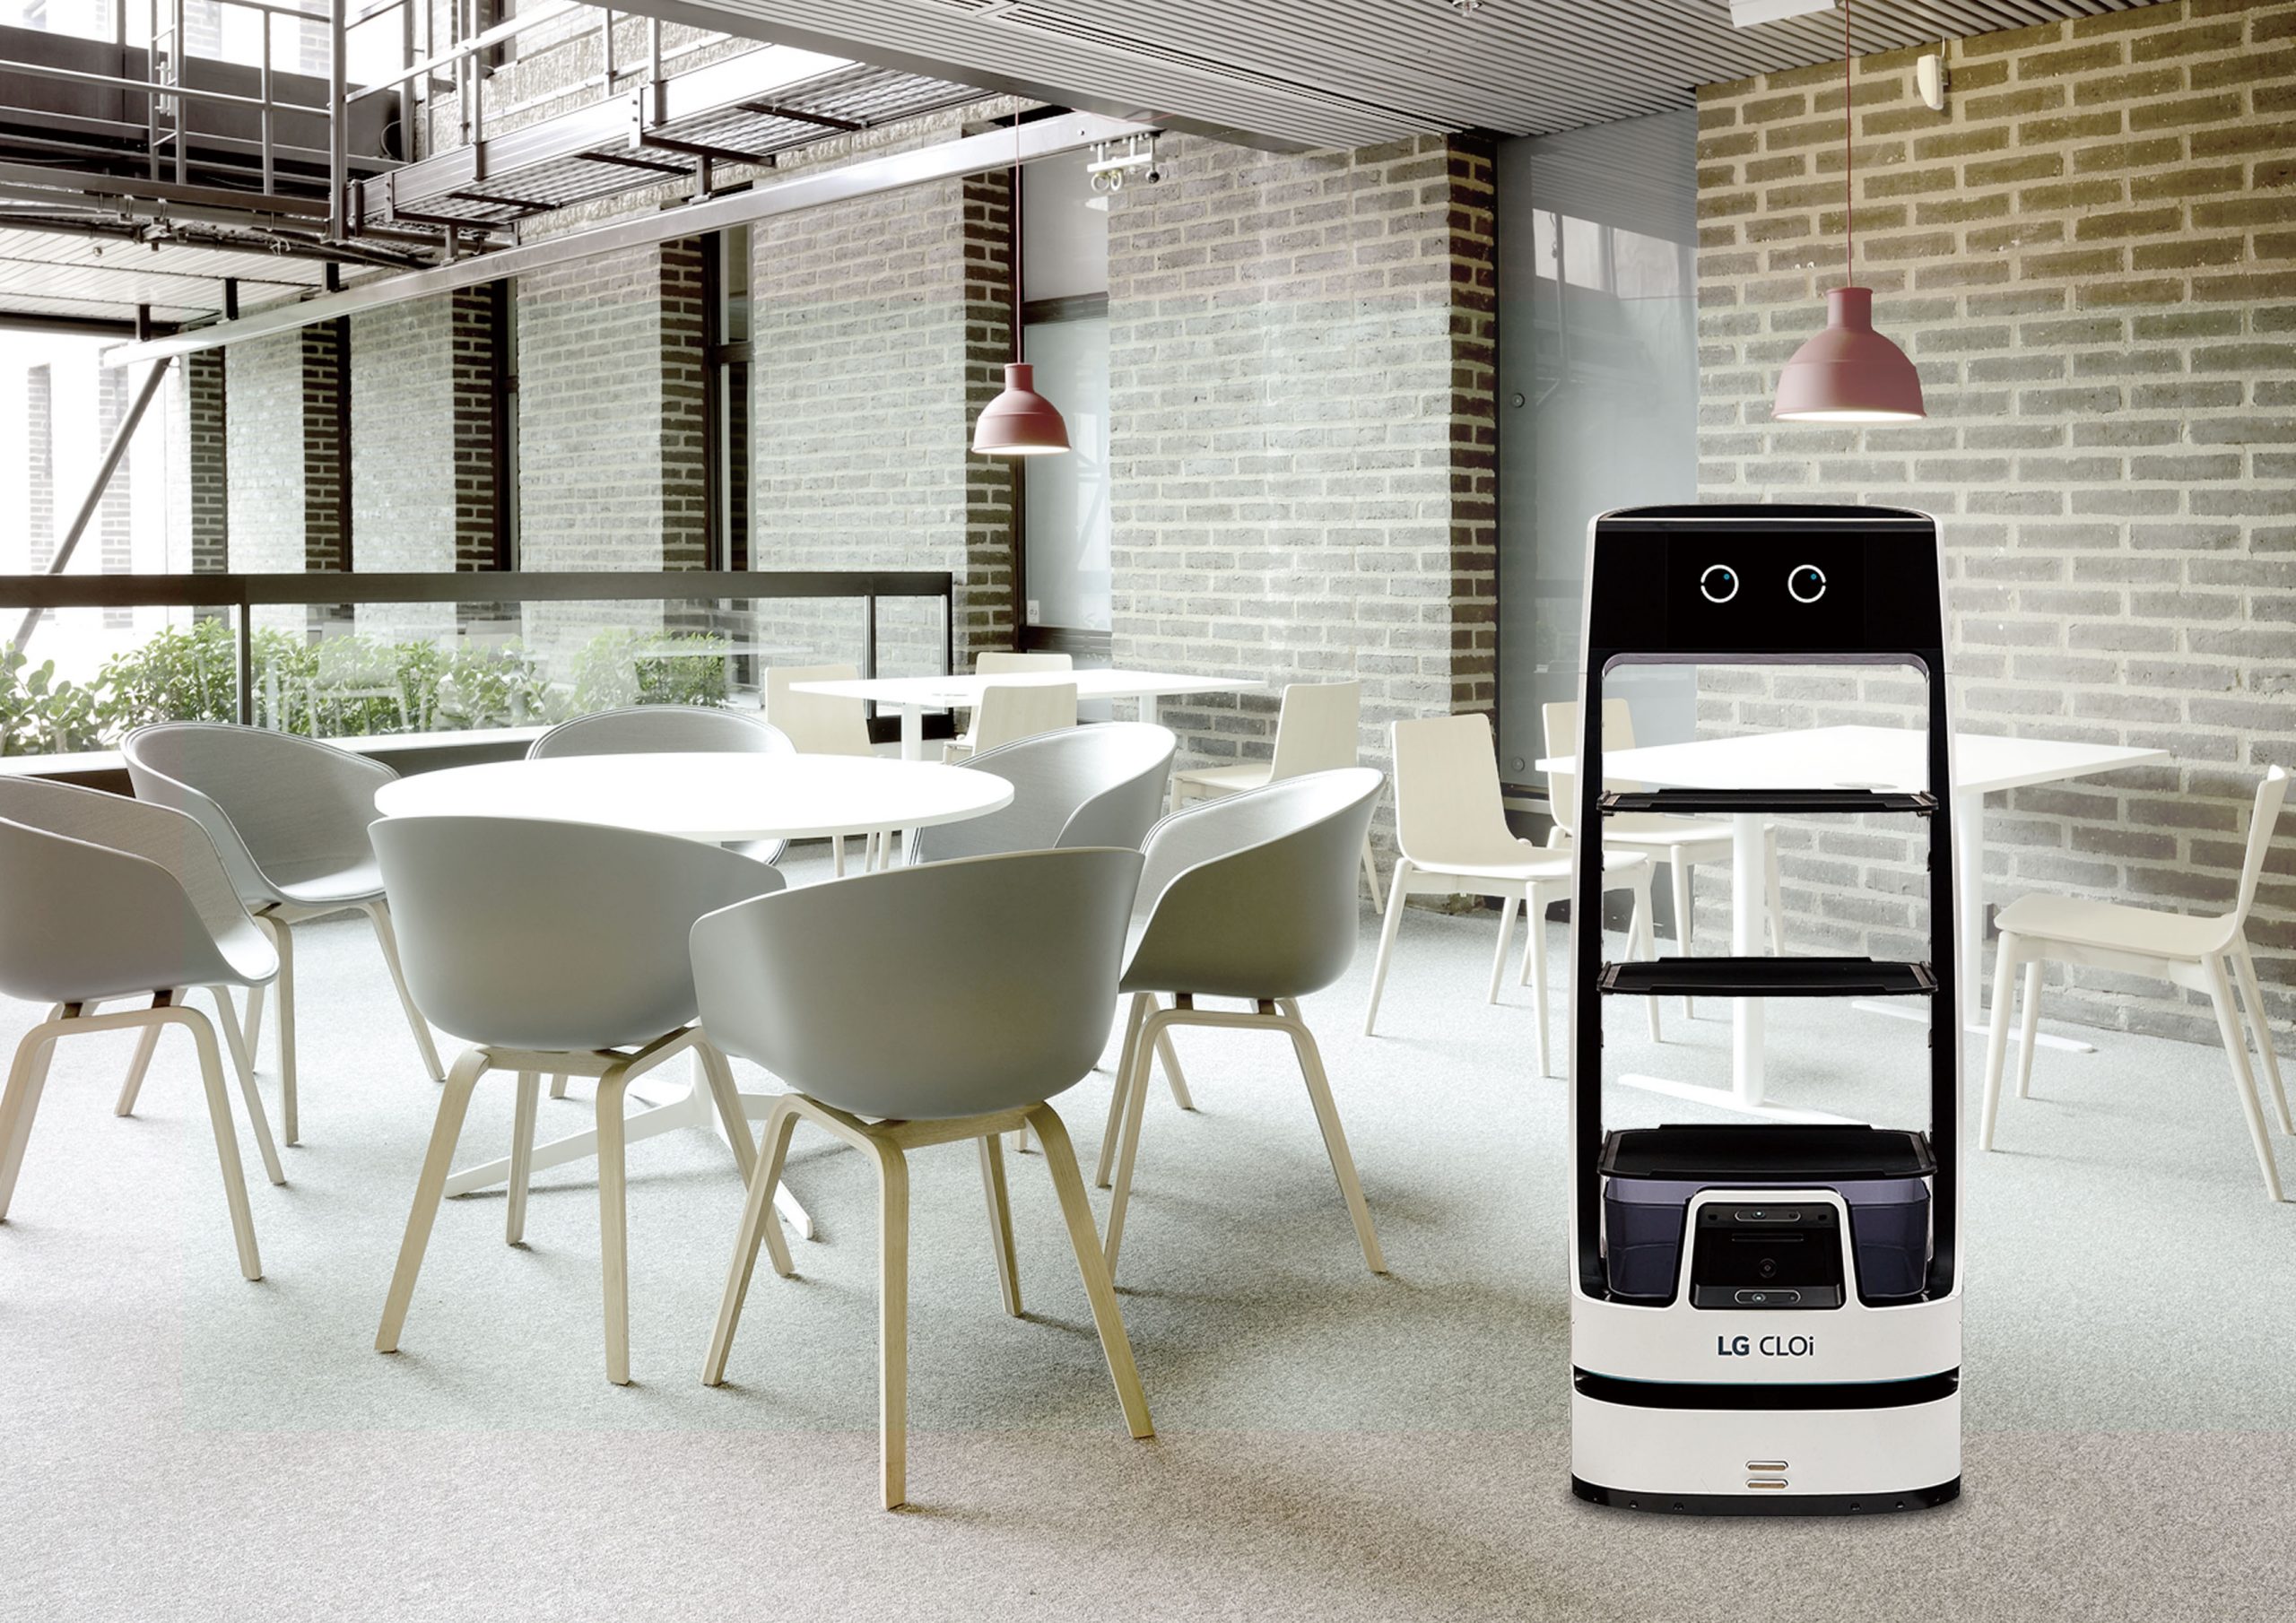 El nuevo robot LG CLOi ofrece un rendimiento óptimo para servicio al cliente